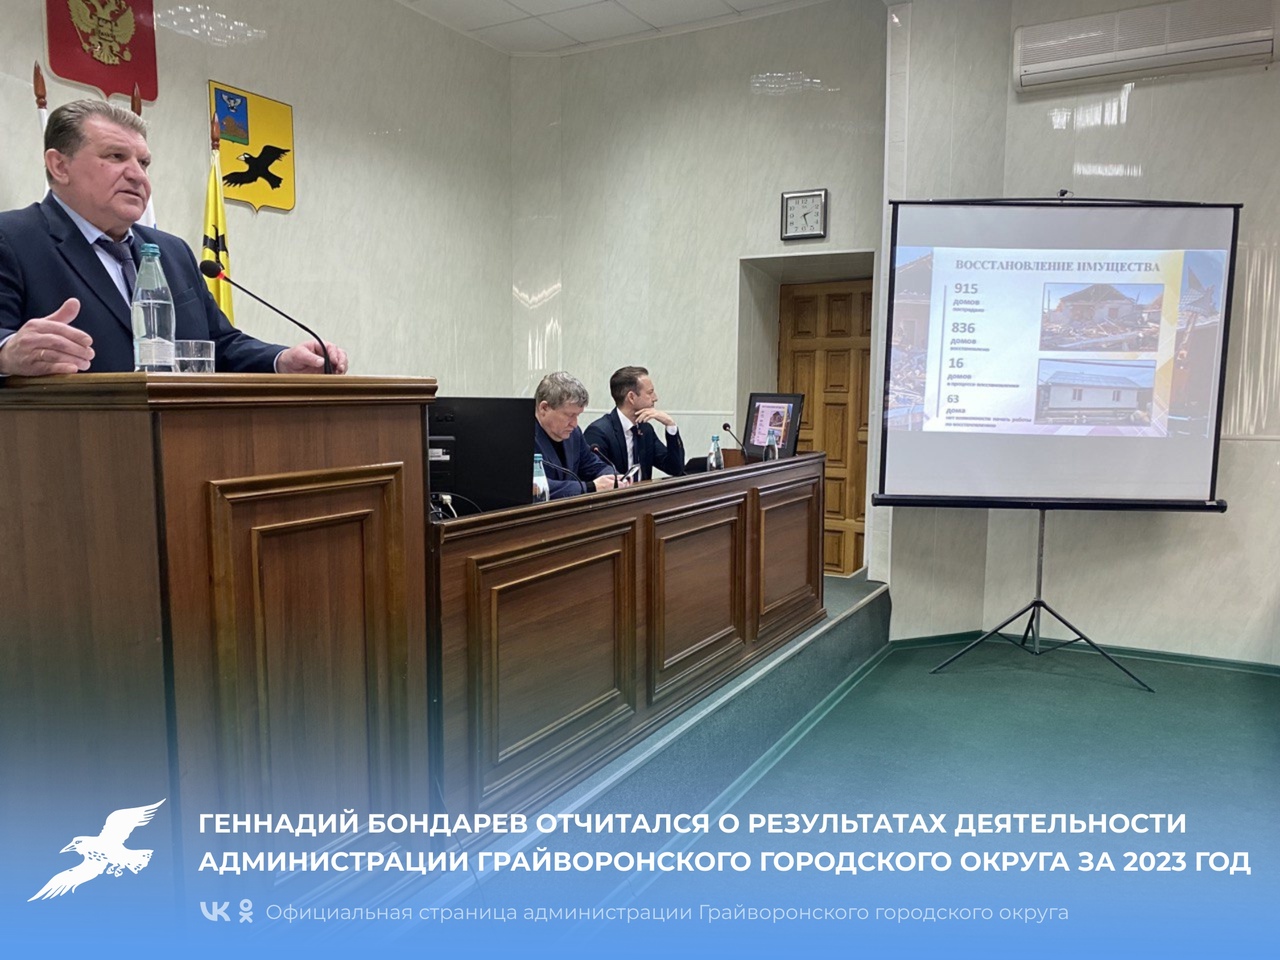 Геннадий Бондарев отчитался о результатах деятельности администрации Грайворонского городского округа за 2023 год.